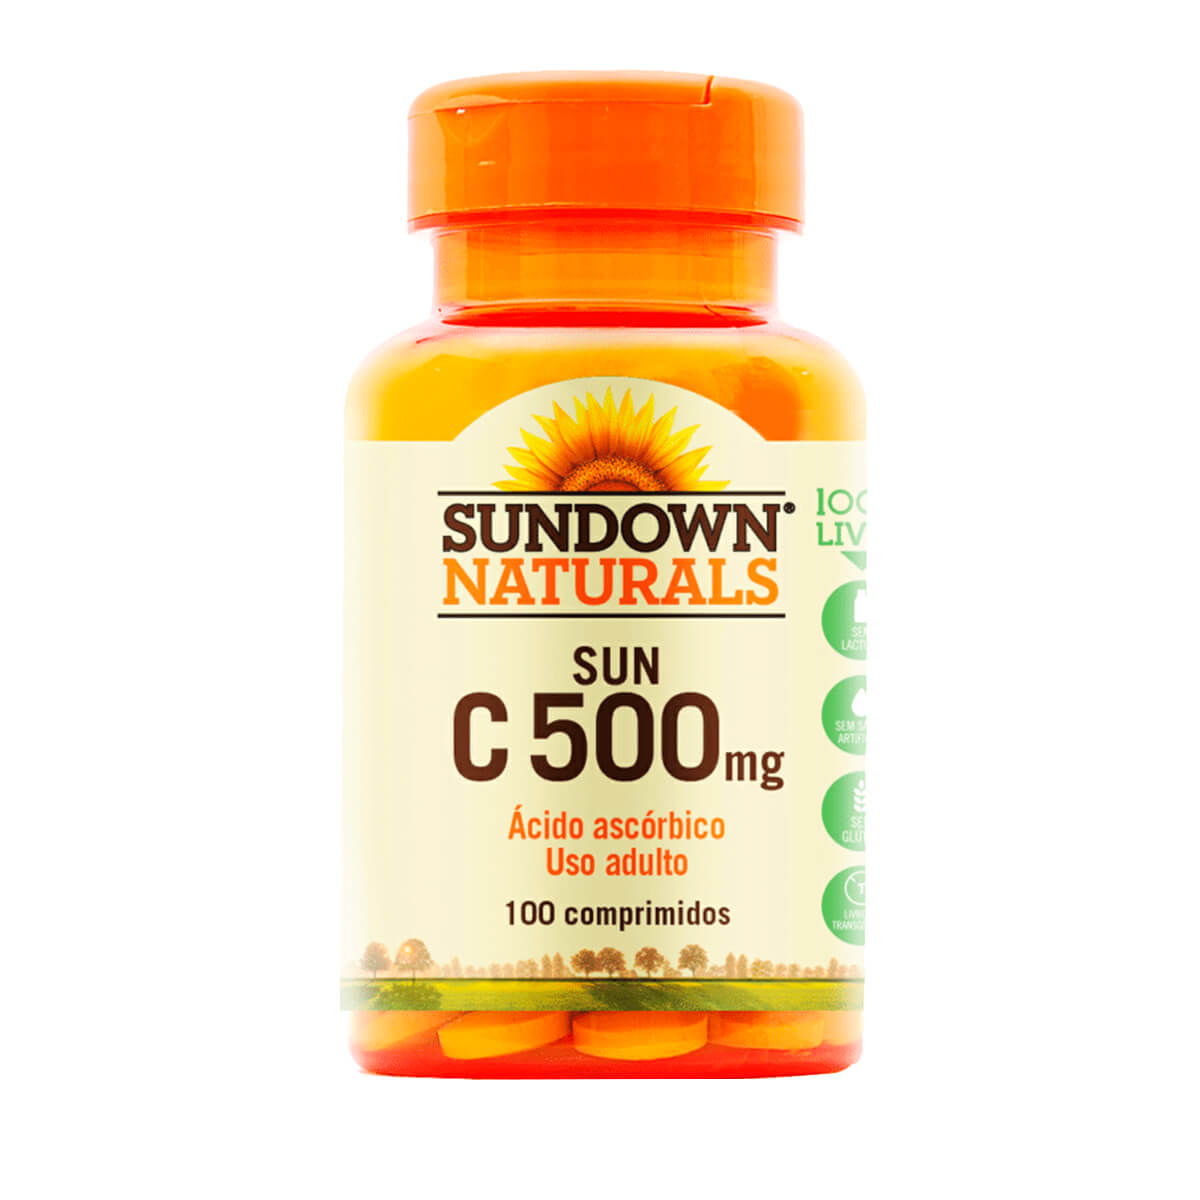 Sun C 500mg Sundown Naturals 100 Tabletes